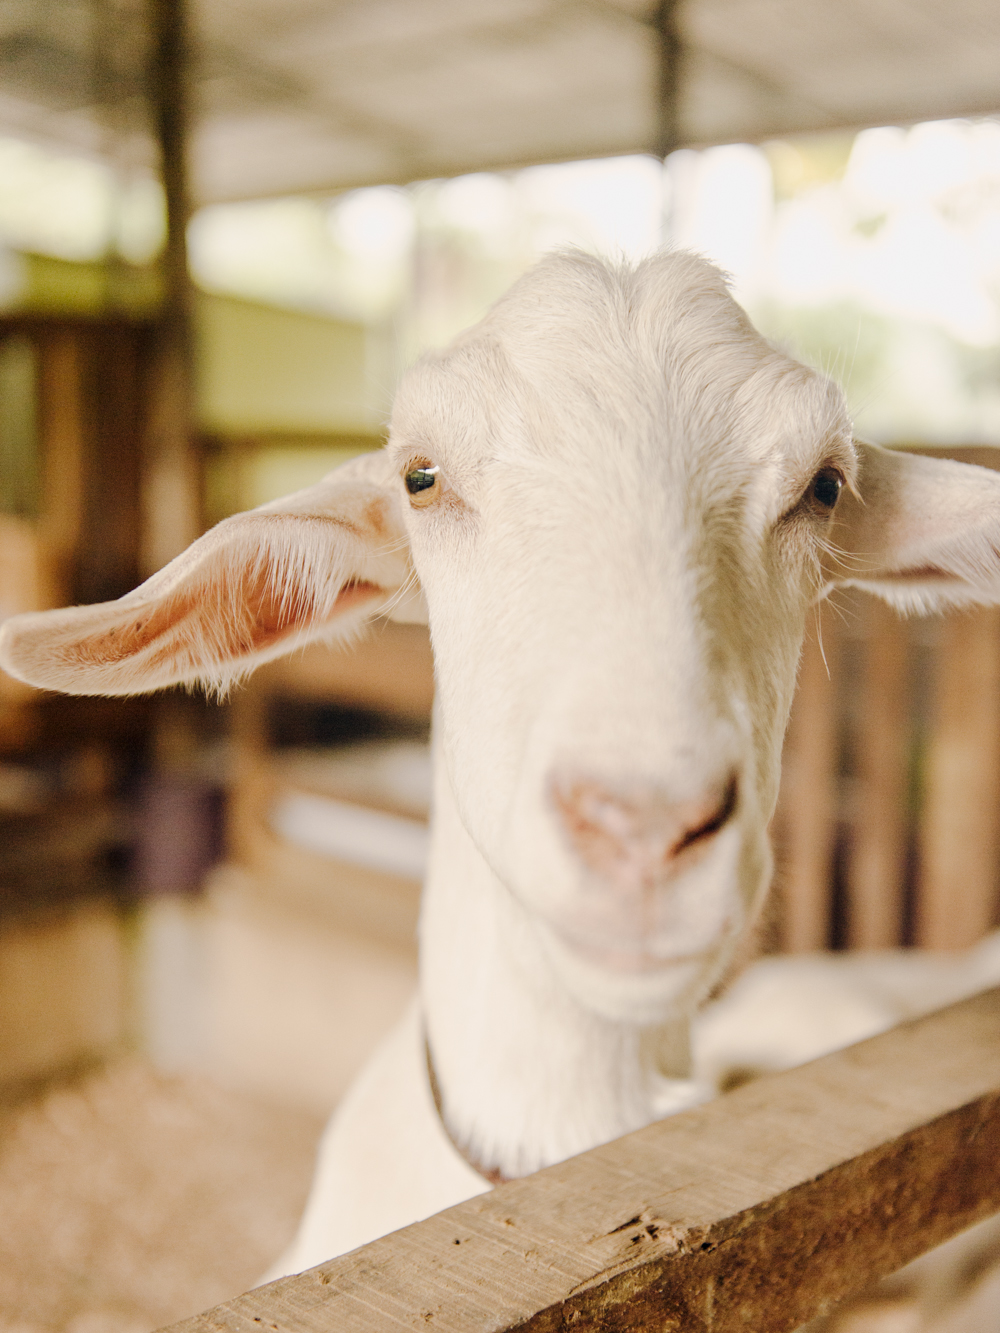 Goat Farm in Costa Rica